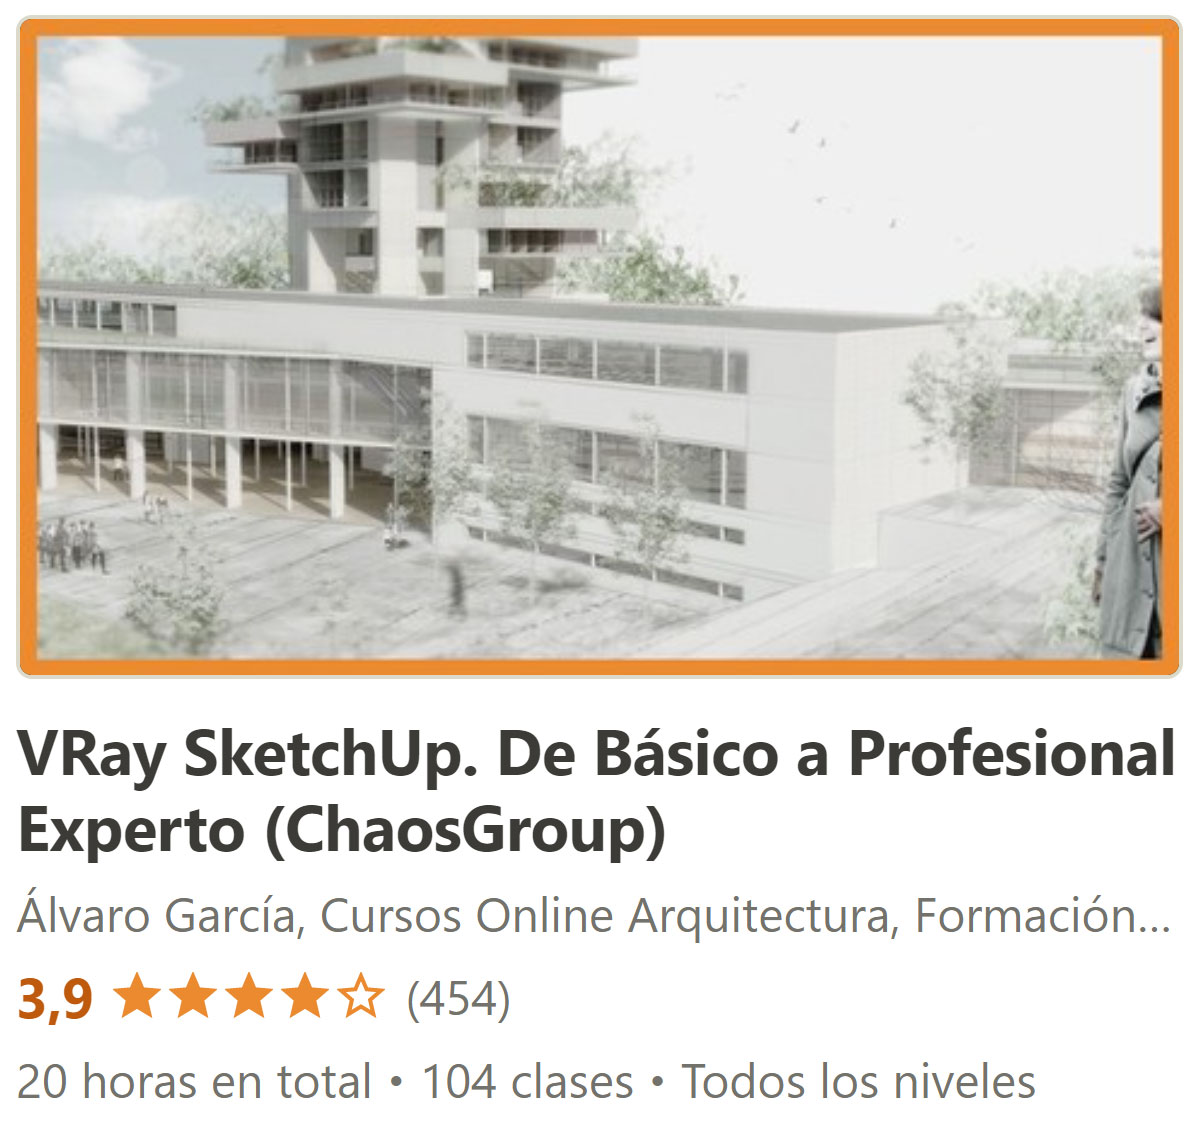 VRay SketchUp. De Básico a Profesional Experto (ChaosGroup)